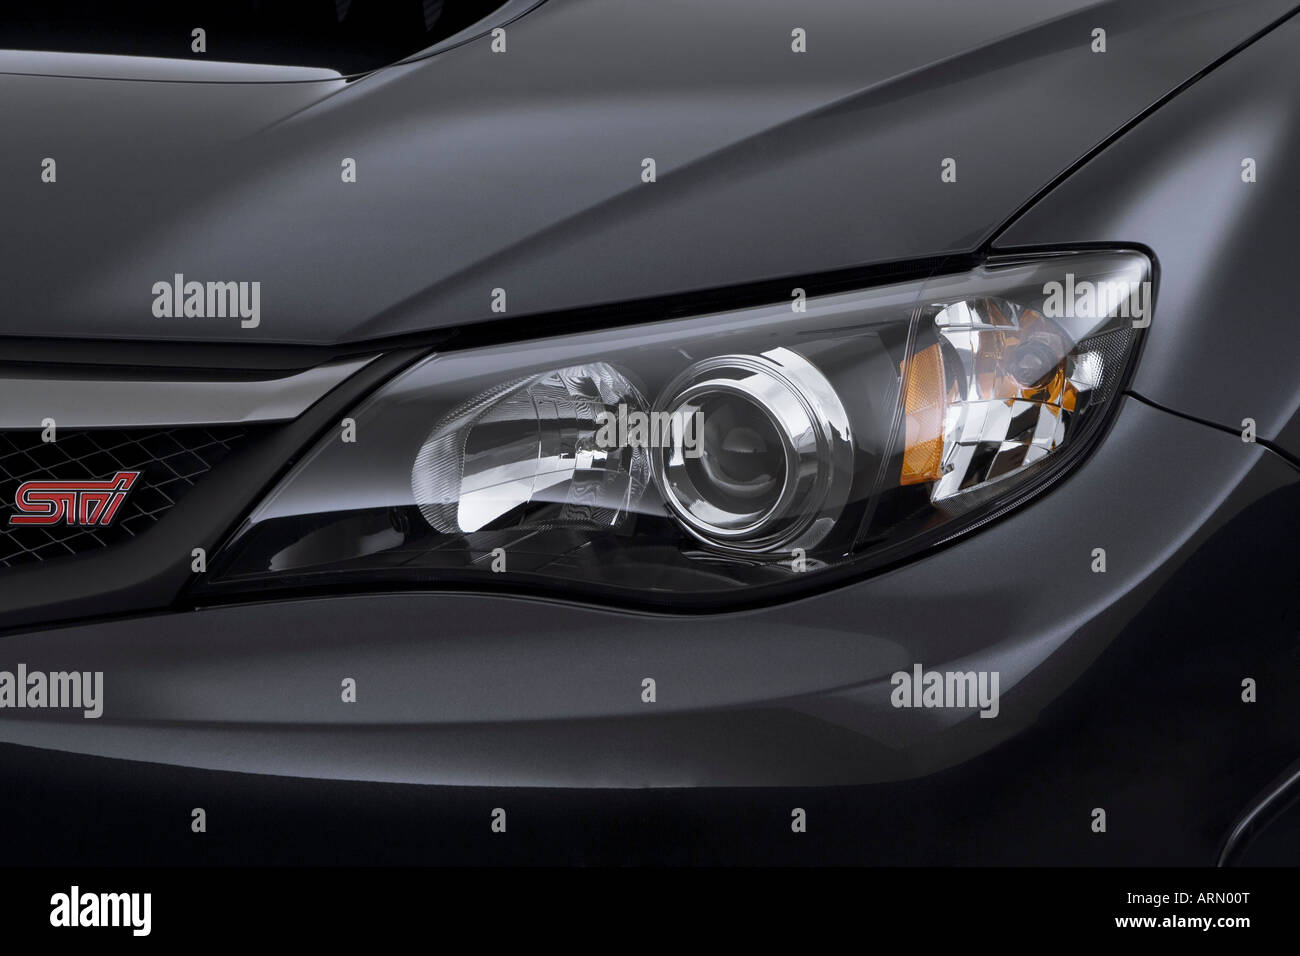 2008-Subaru Impreza WRX STi in grau - Scheinwerfer Stockfotografie - Alamy